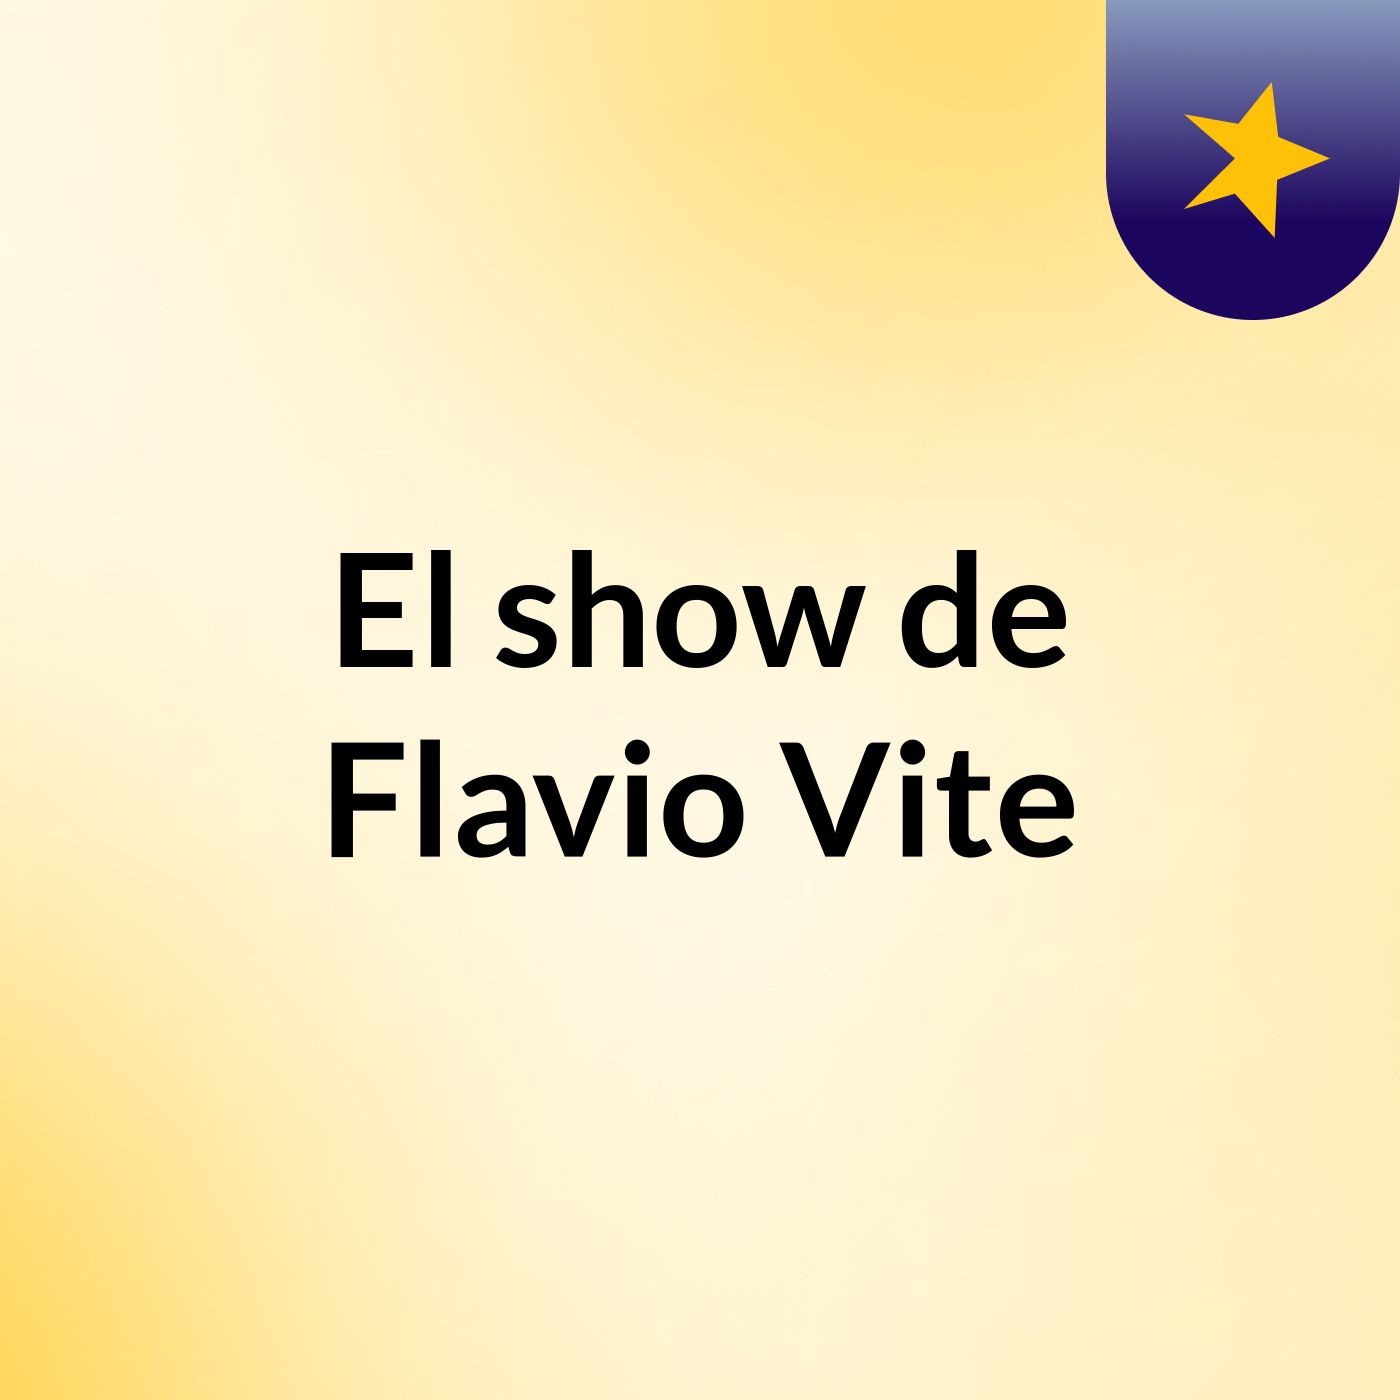 El show de Flavio Vite